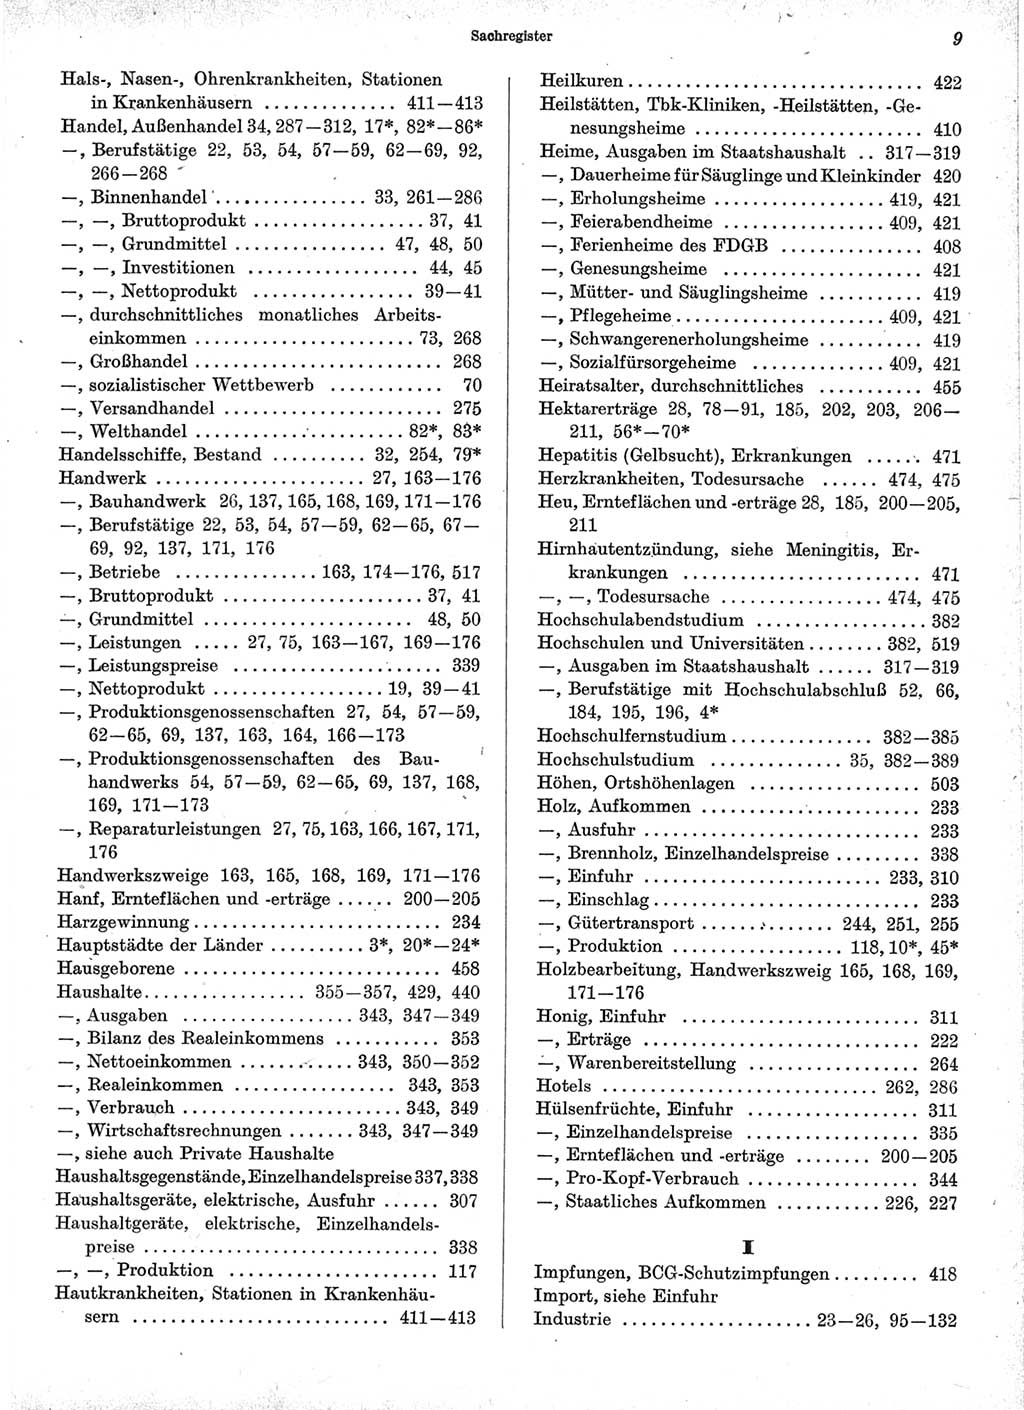 Statistisches Jahrbuch der Deutschen Demokratischen Republik (DDR) 1971, Seite 9 (Stat. Jb. DDR 1971, S. 9)